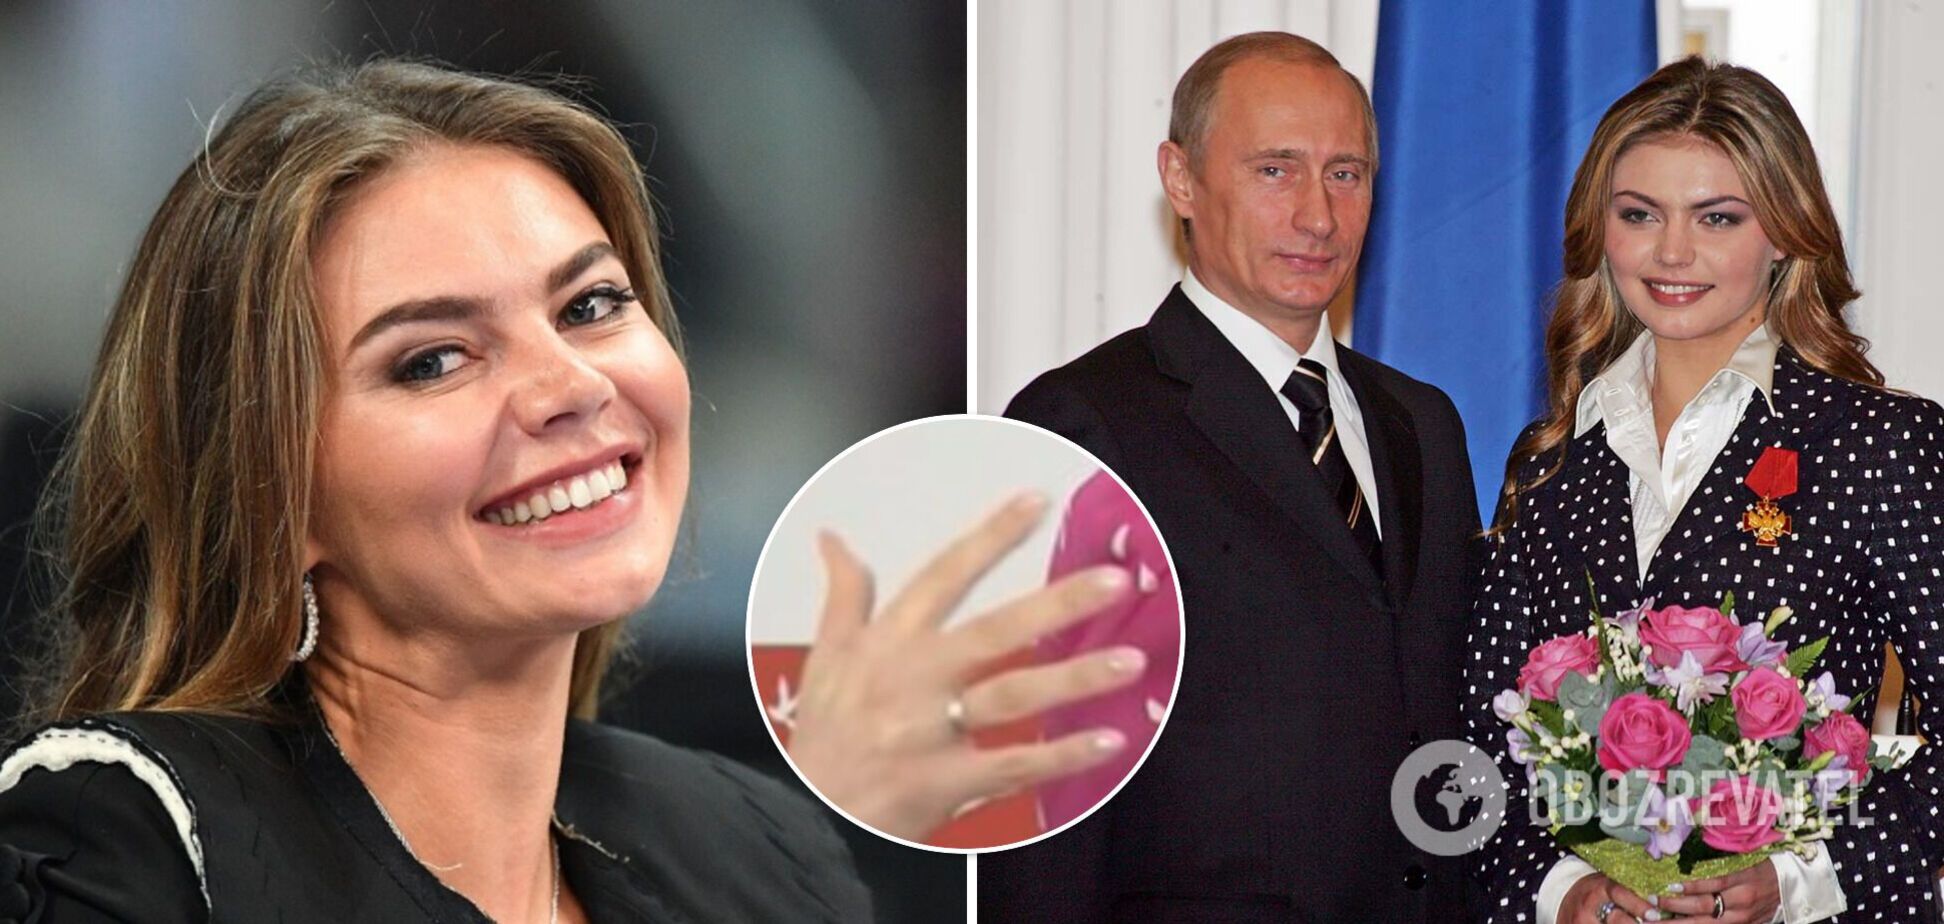 Хороший знак для Украины: у любовницы Путина Кабаевой заметили обручальное кольцо